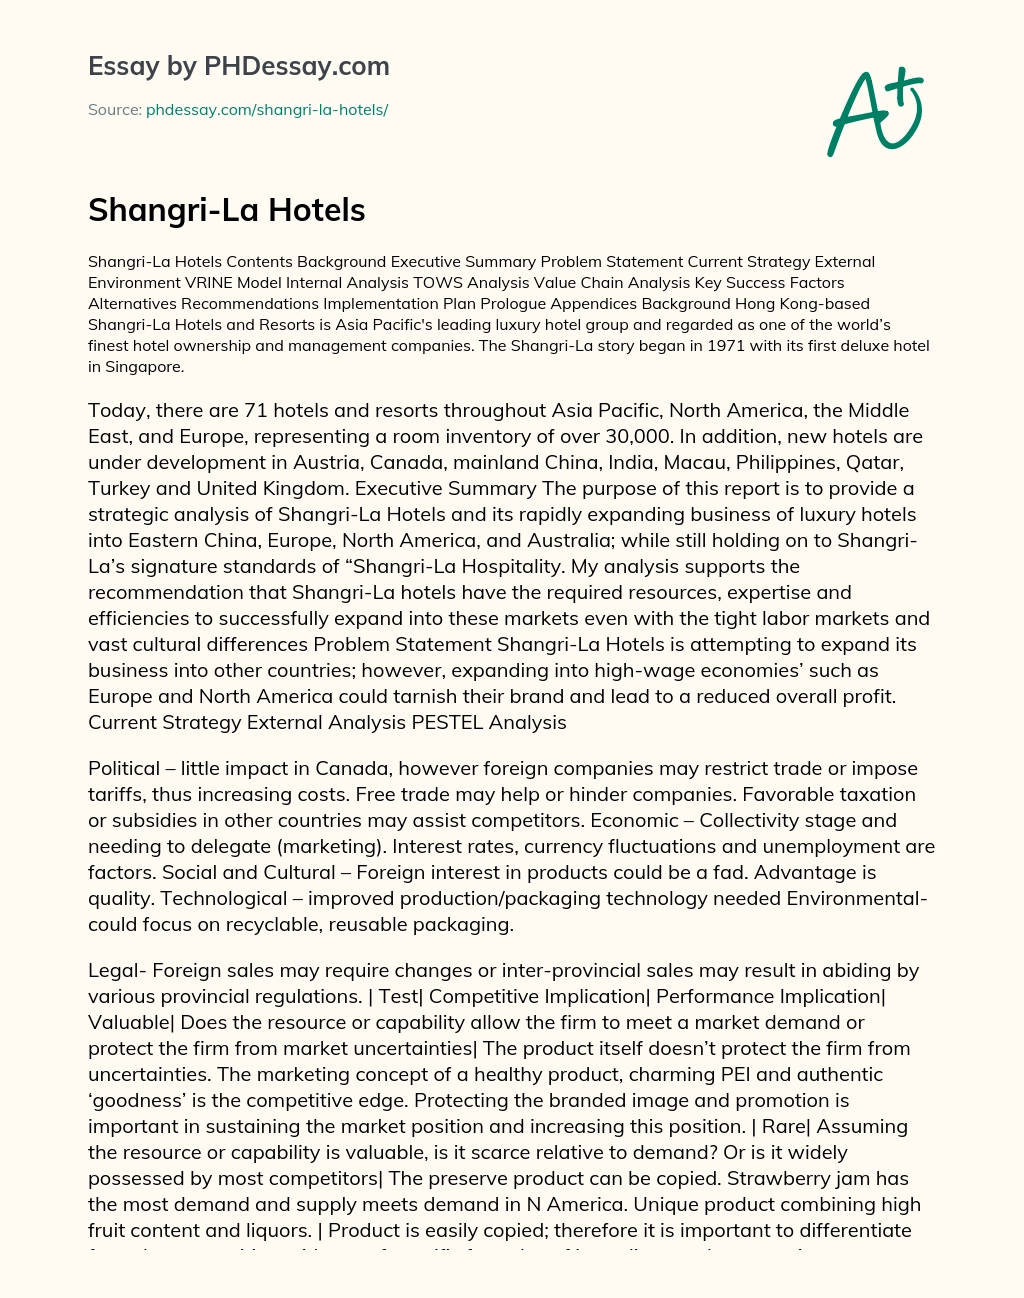 Shangri-La Hotels essay